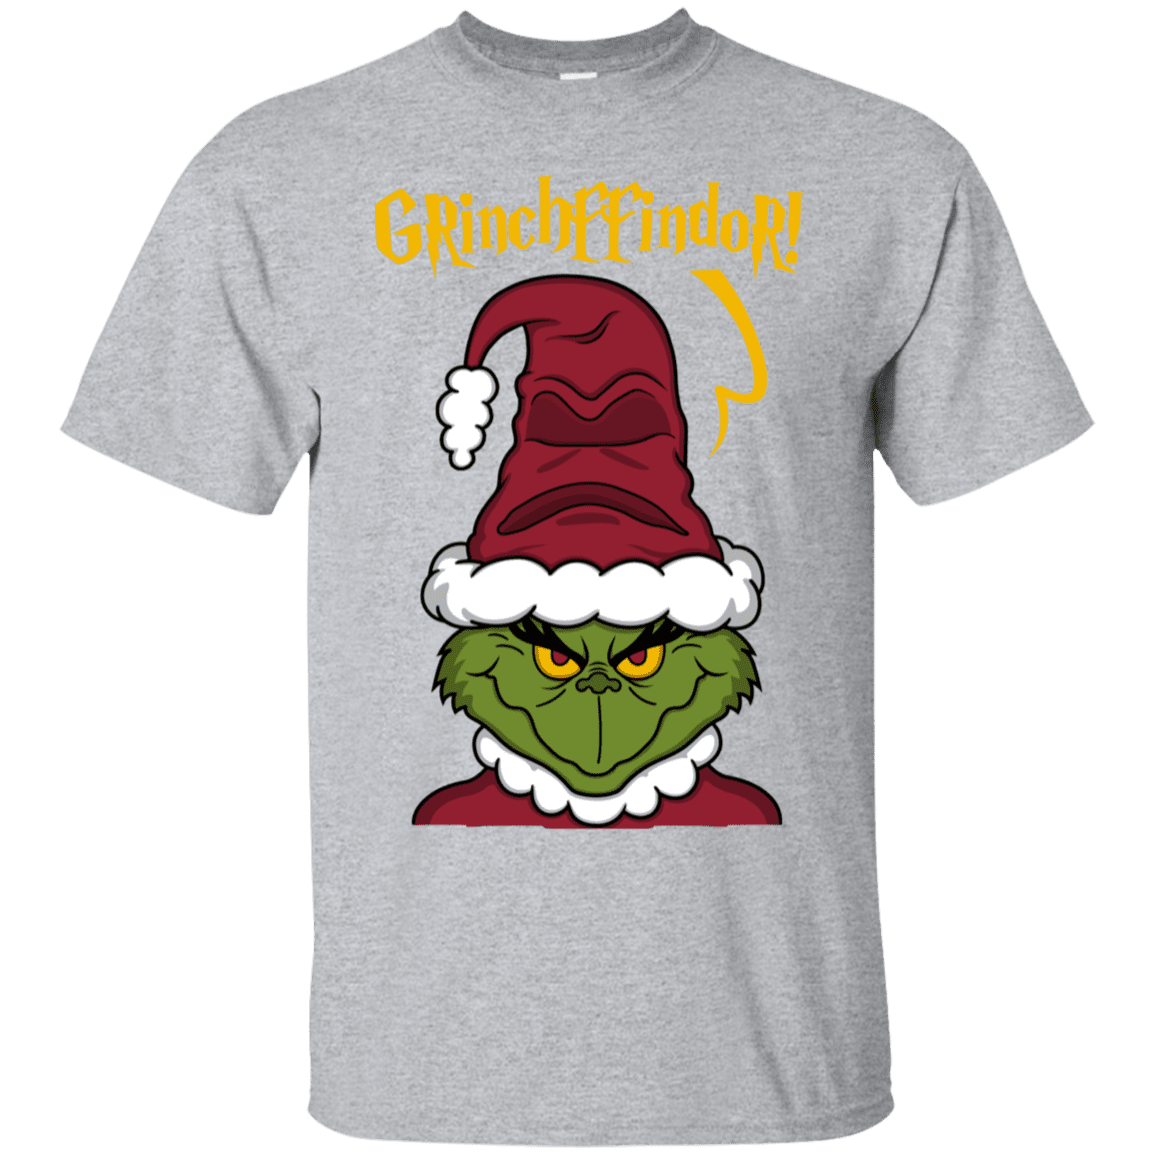 T-Shirts Sport Grey / S Grinchffindor T-Shirt